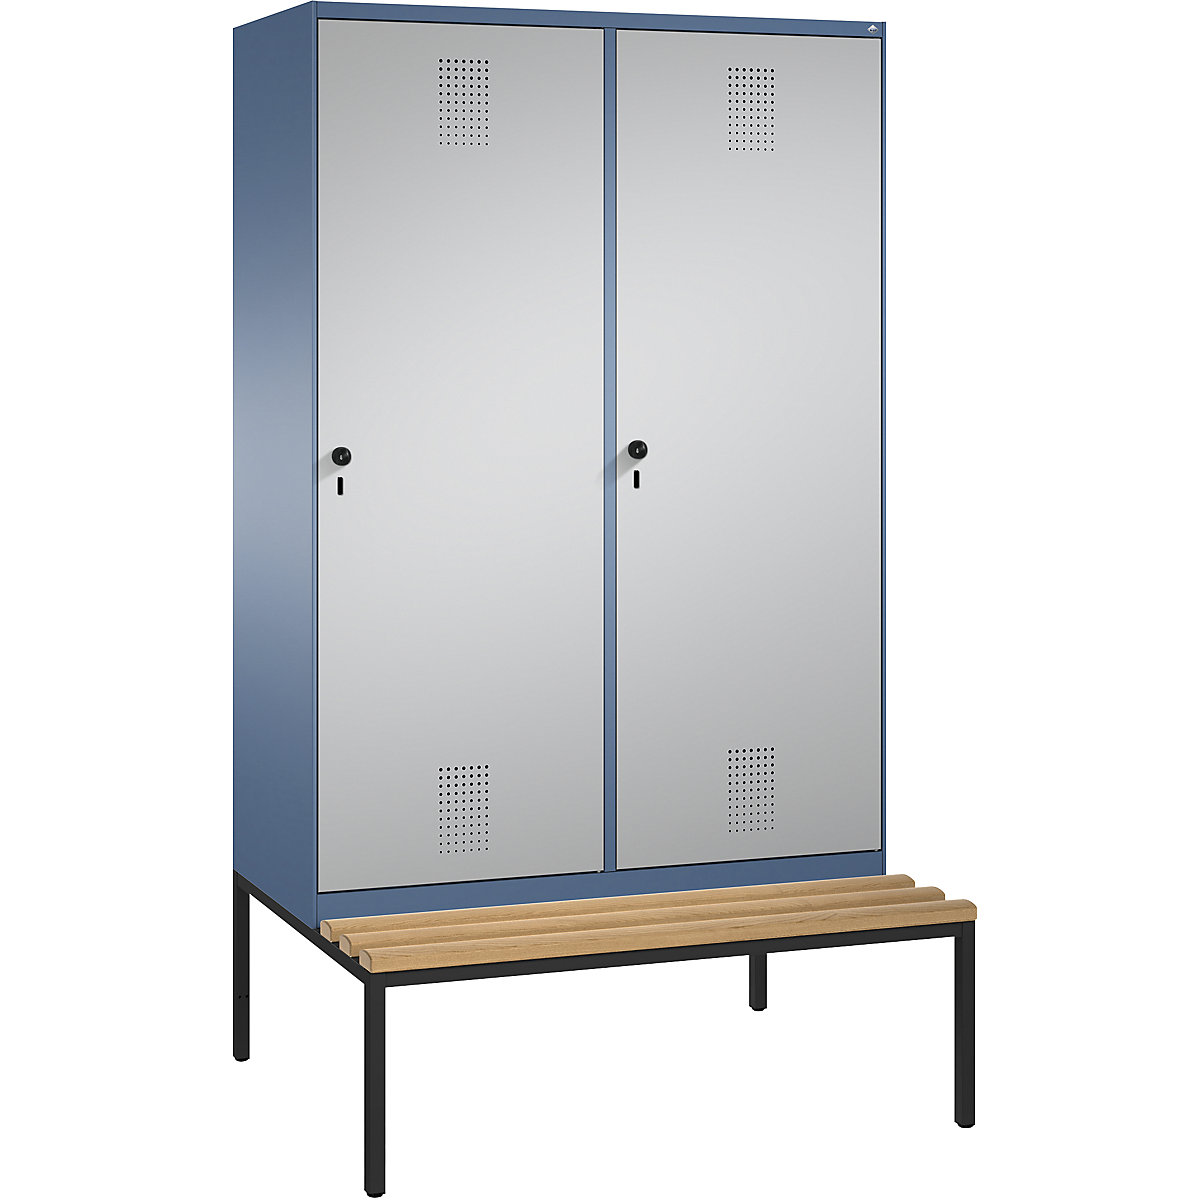 Šatní skříň s lavicí EVOLO s dveřmi přes 2 oddíly – C+P, 4 oddíly, 2 dveře, šířka oddílu 300 mm, modrošedá / bílý hliník-12